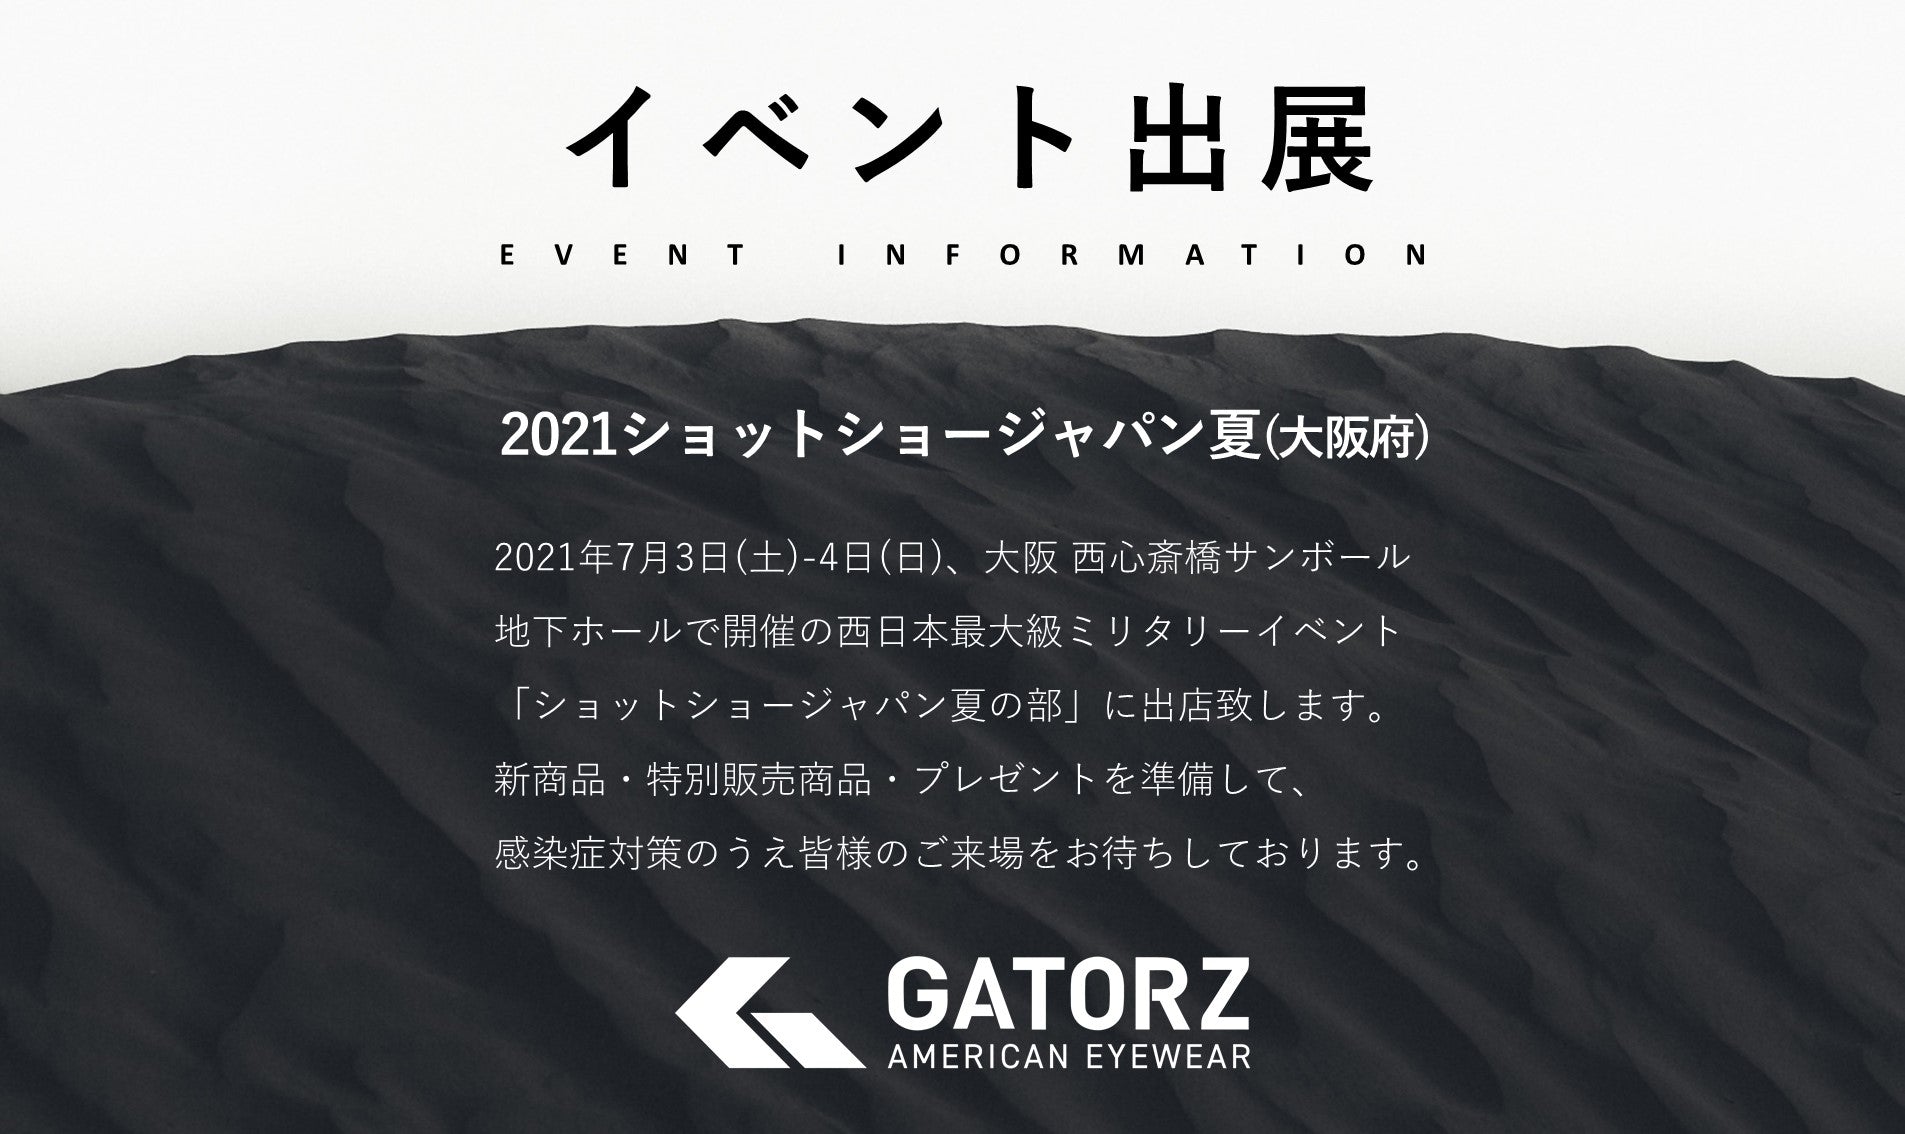 7 3 4 ショットショー大阪21 イベント出展のご案内 Gatorz Japan